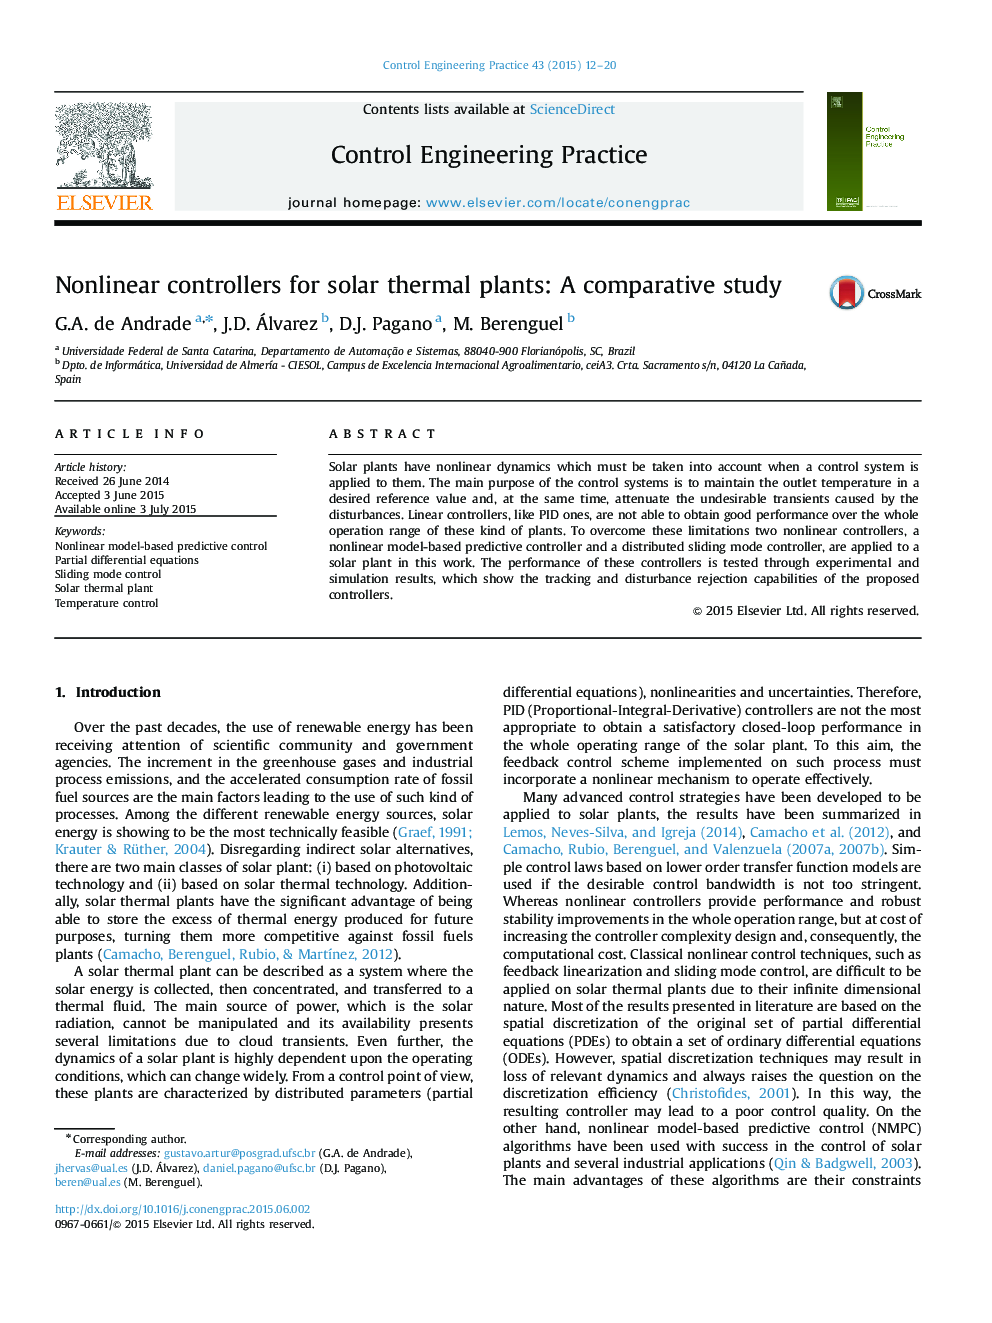 کنترل های غیر خطی برای گیاهان خورشیدی: یک مطالعه مقایسه ای 